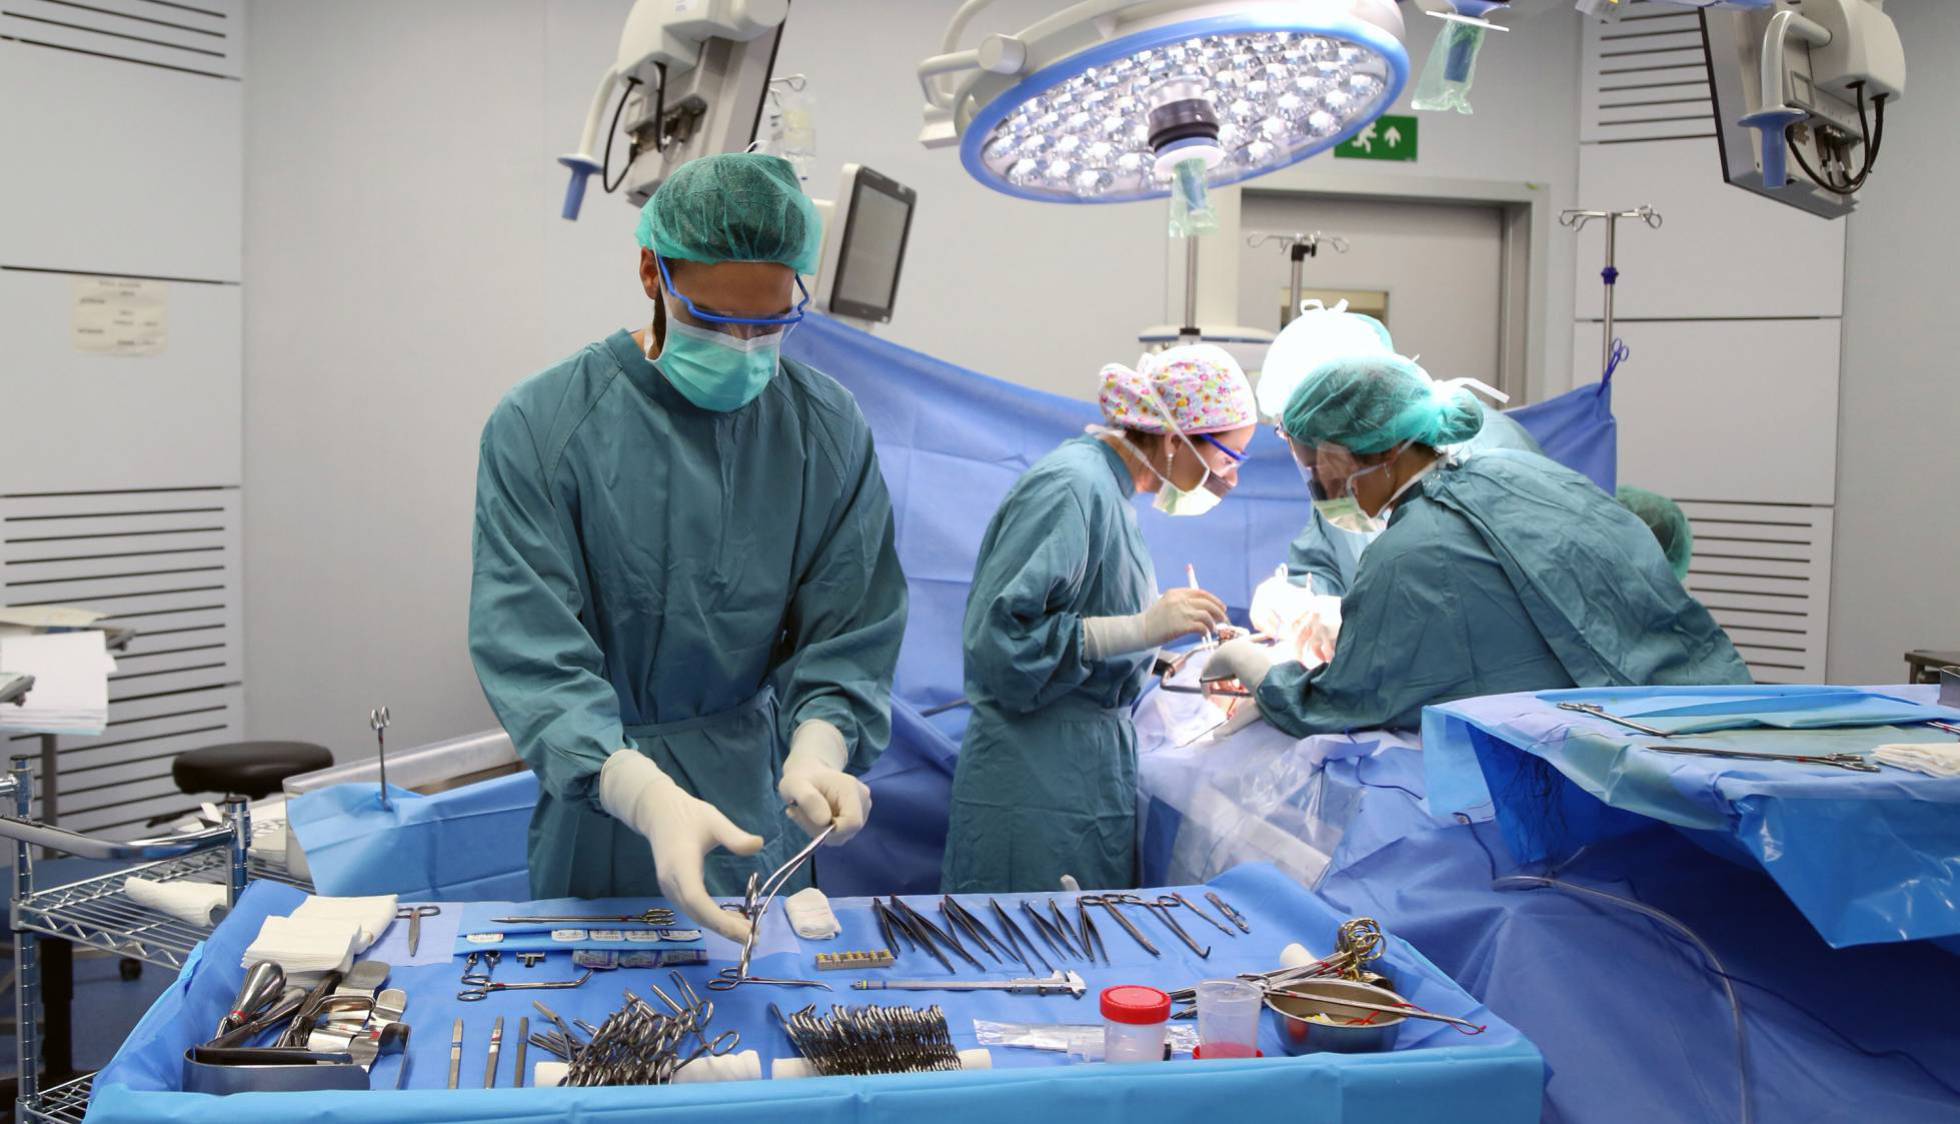 operacion quirurgica